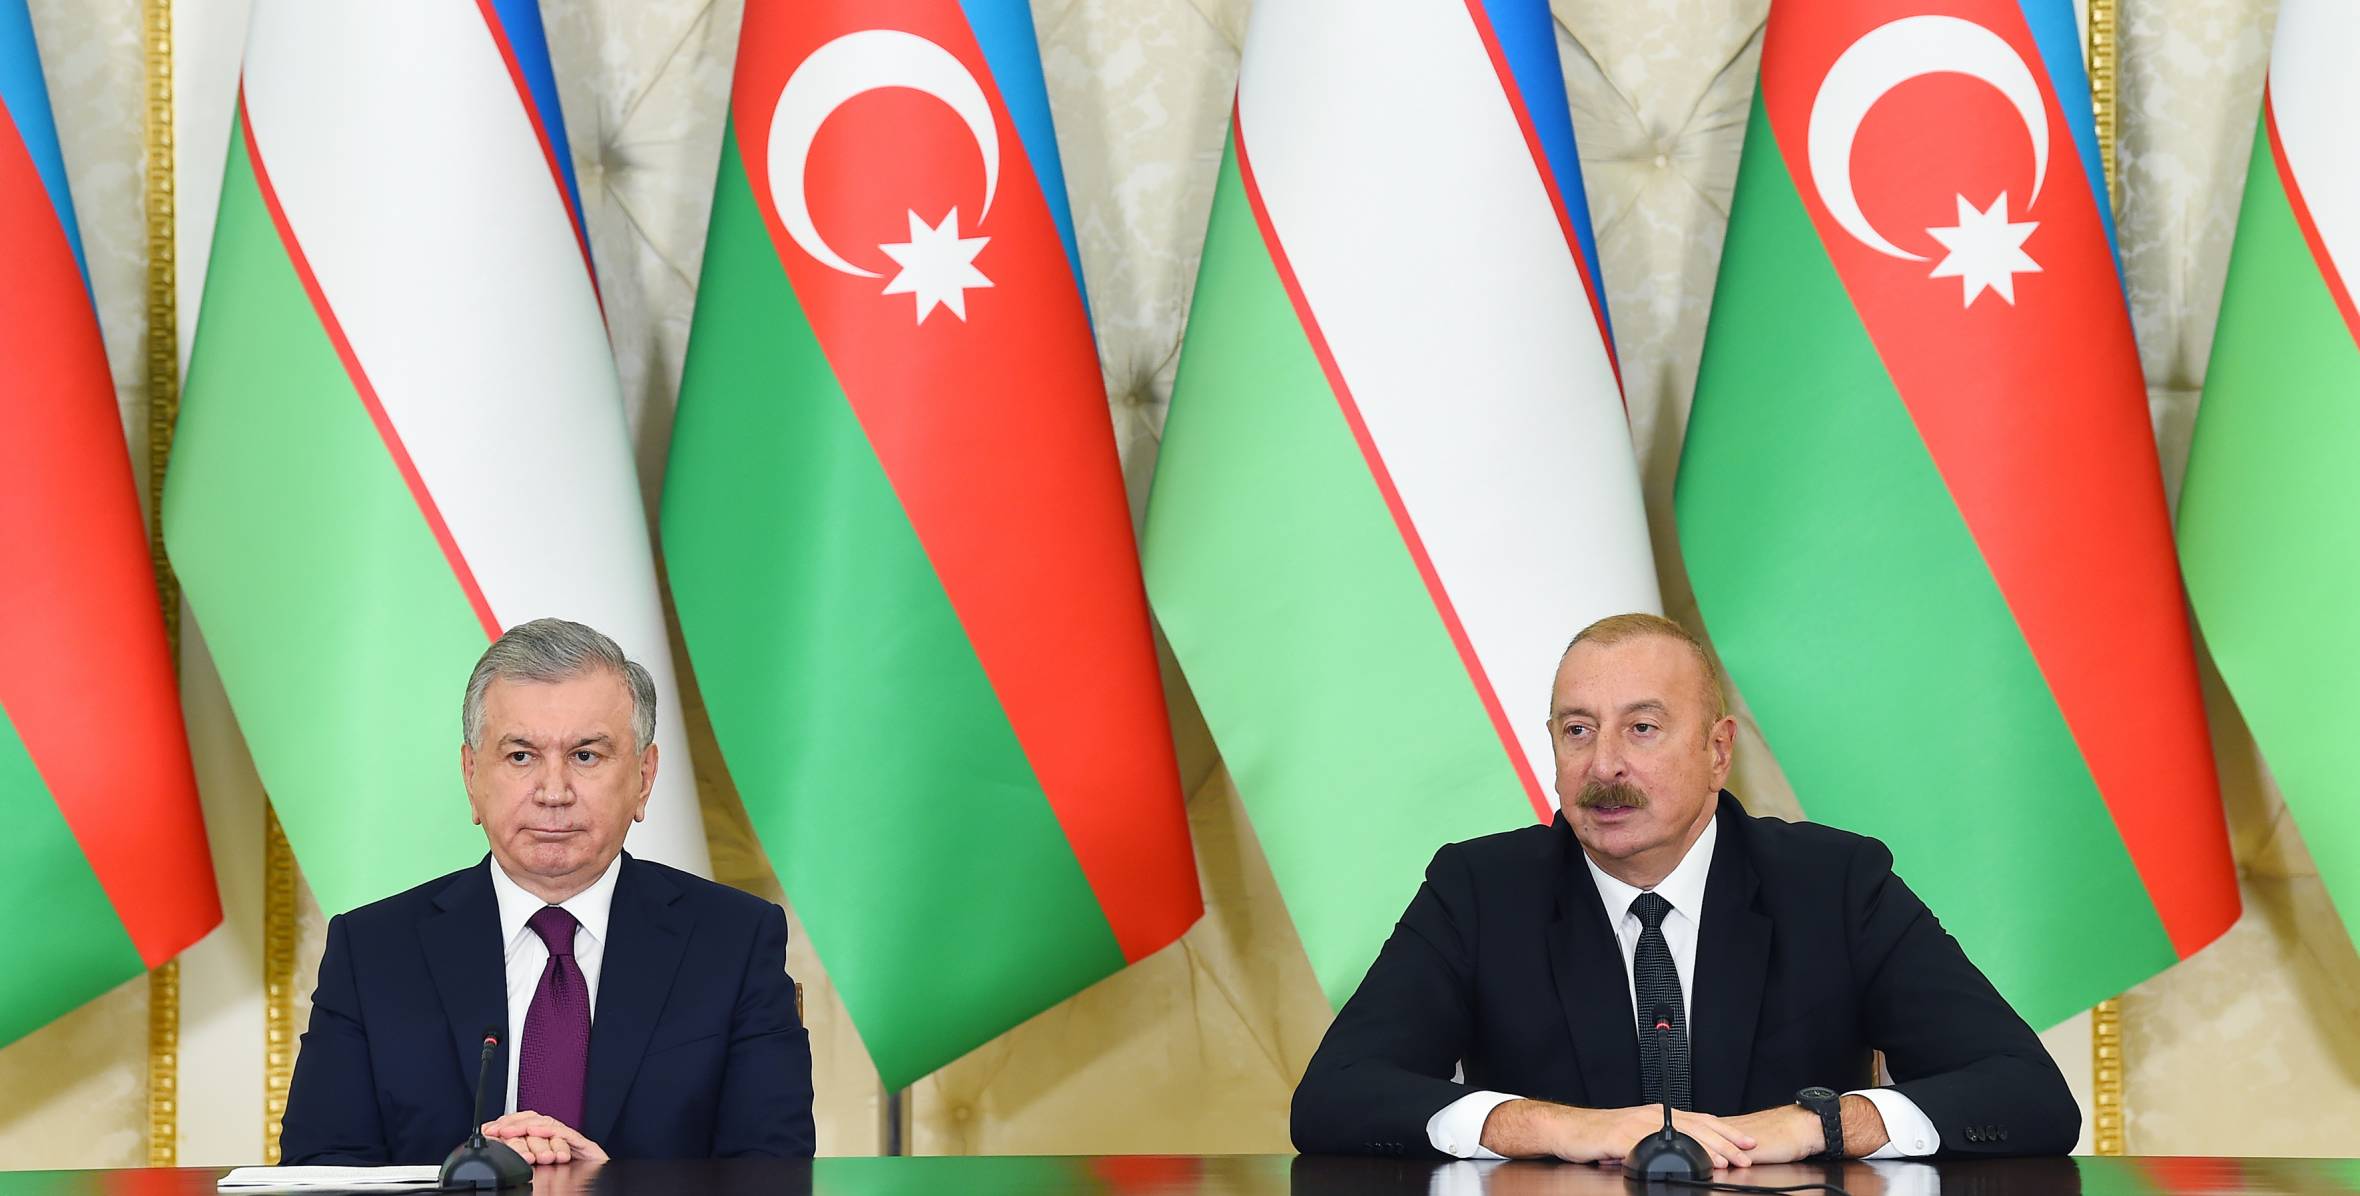 Президенты Азербайджана и Узбекистана выступили с заявлениями для прессы